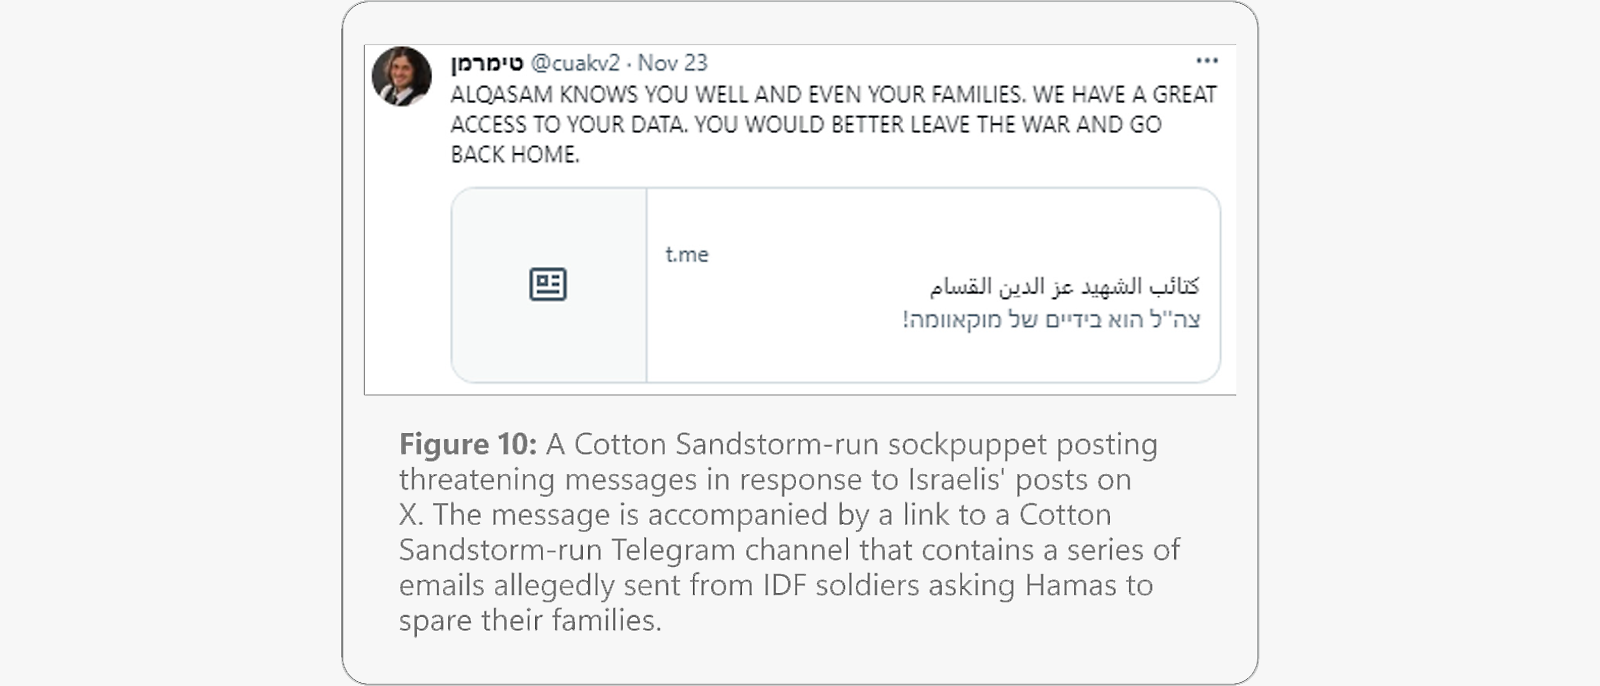 Mensagem ameaçadora de uma alegada conta falsa do Cotton Sandstorm, referindo o acesso a dados pessoais e encorajando o abandono da guerra.